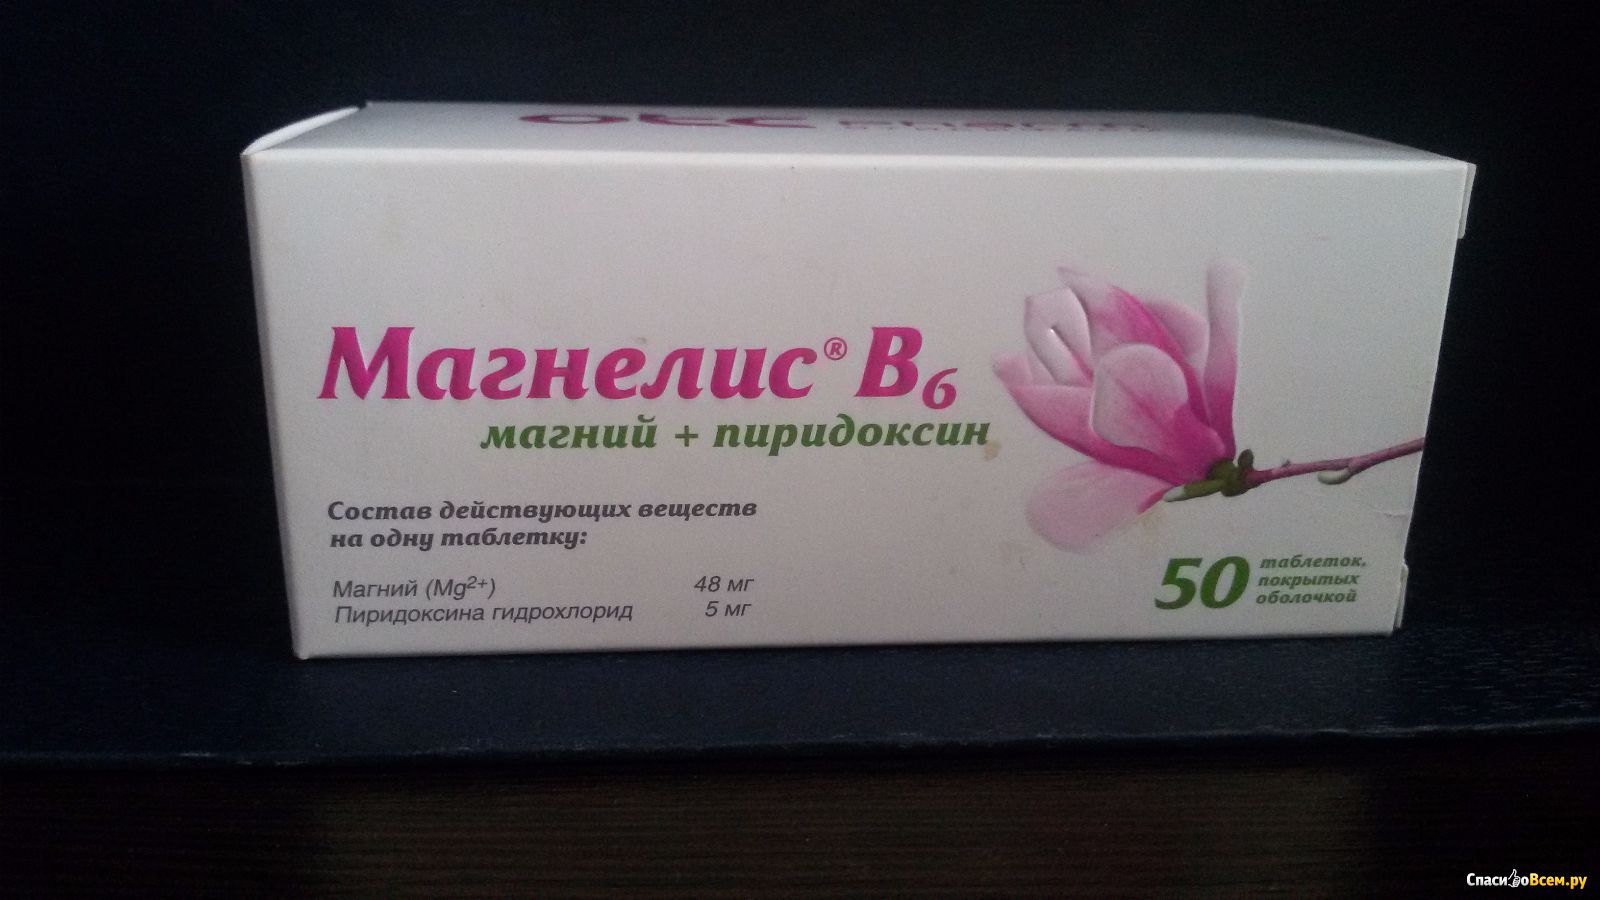 Магний аптека столички. Магнелис в6. Магнелис б6 розовая упаковка. Витамины магнелис в6. Магнелис в6 розовая упаковка.